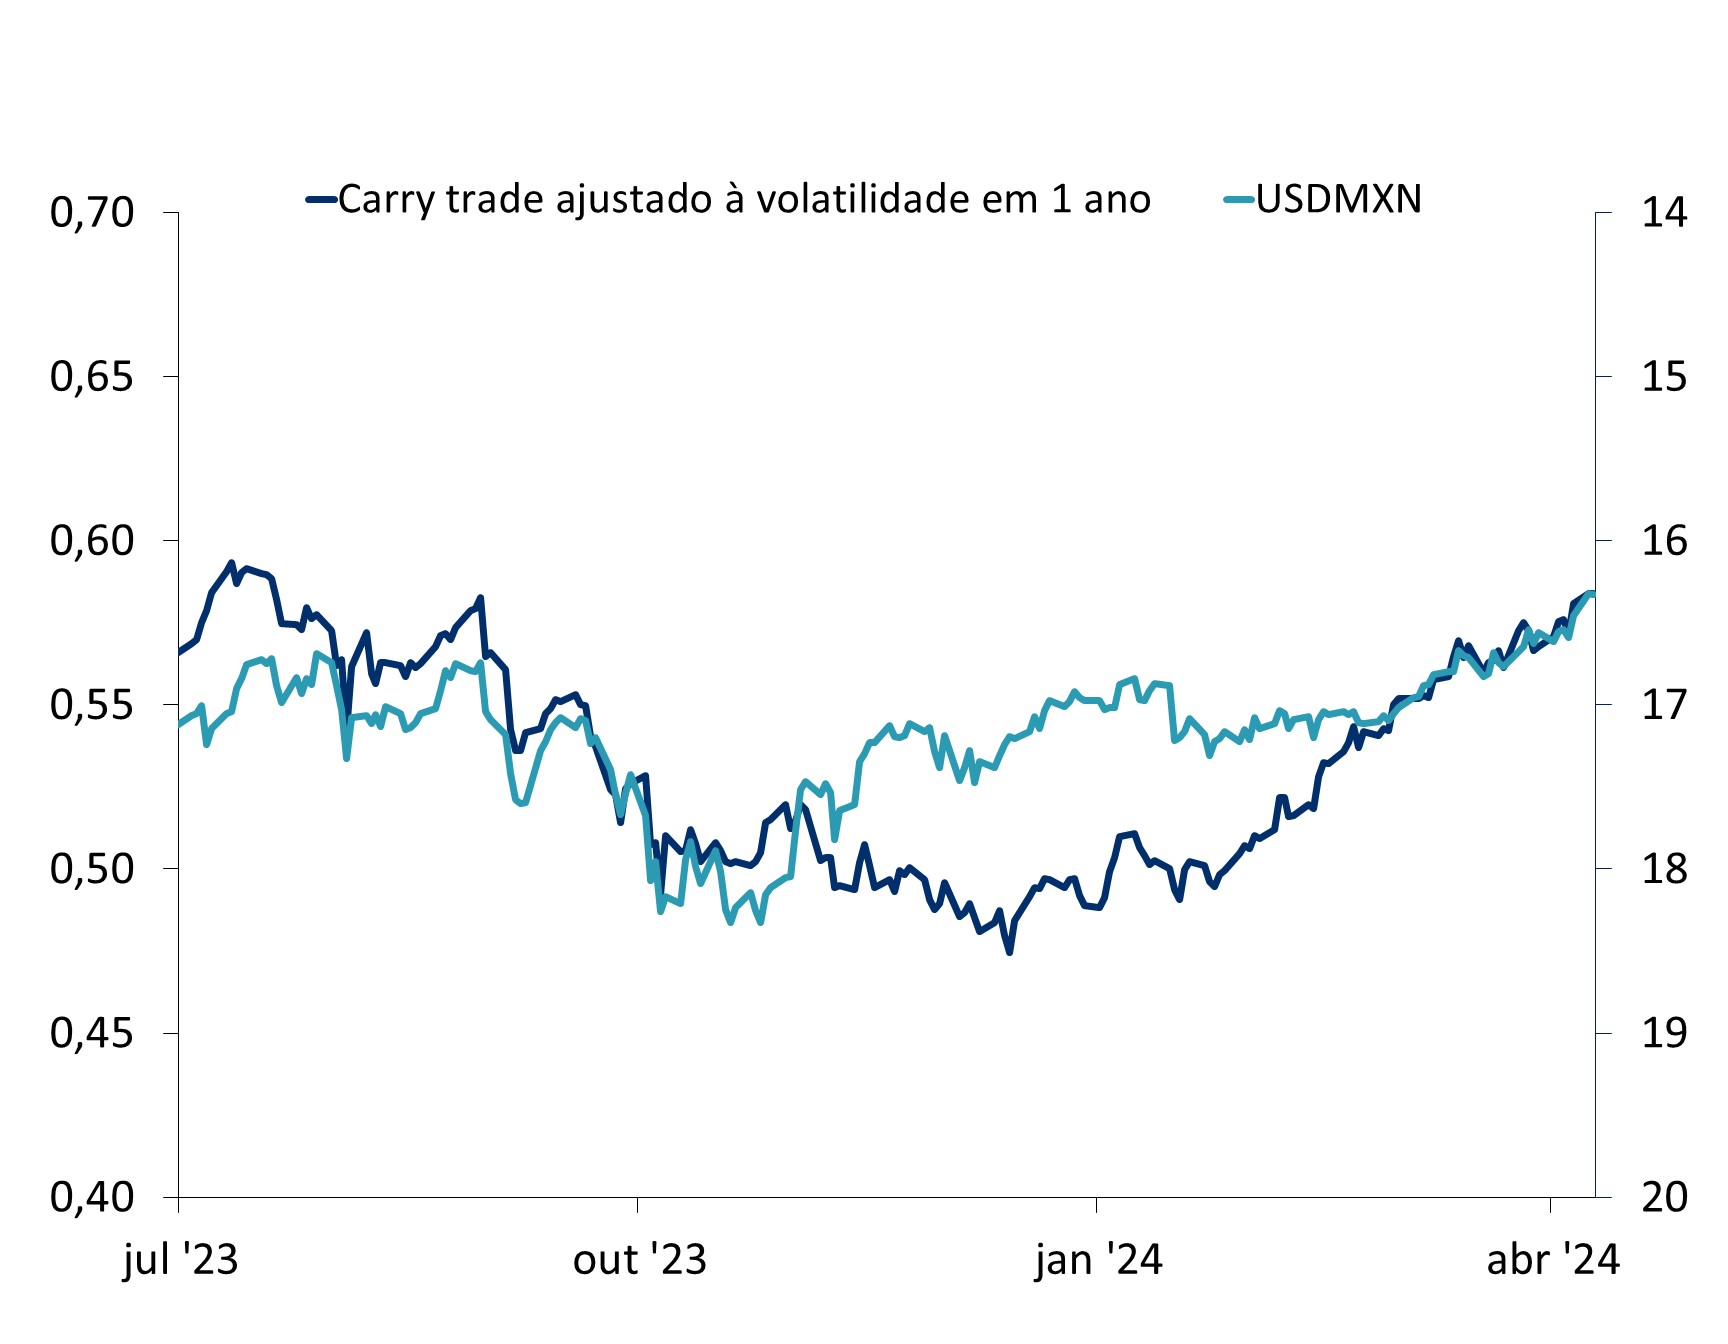 Este gráfico mostra USDMXN vs. o Índice carry trade ajustado à volatilidade em 1 ano de julho de 2023 a abril de 2024.